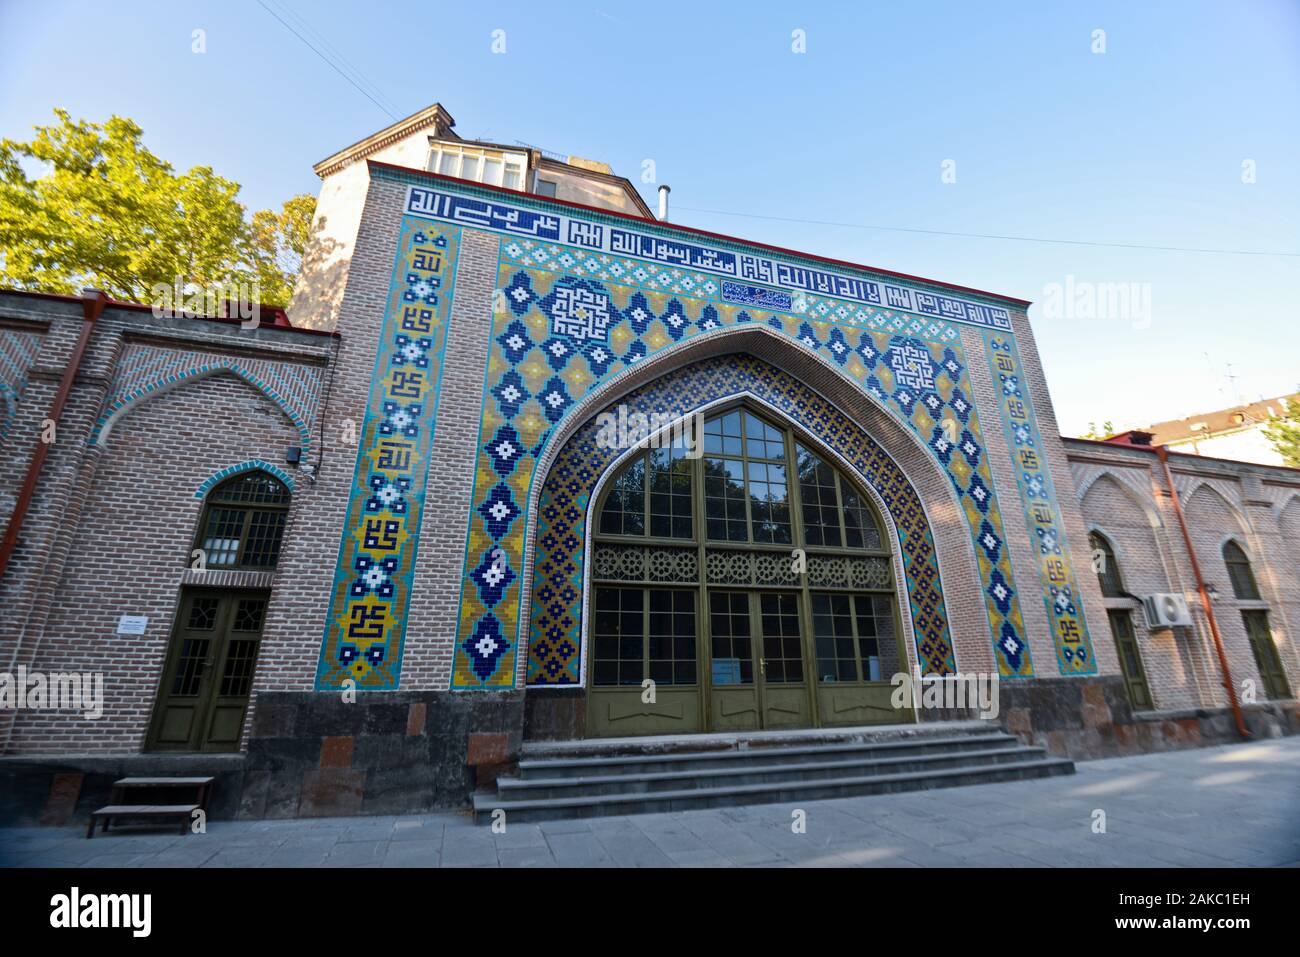 Blaue Moschee, Eriwan. Armenien Stockfoto